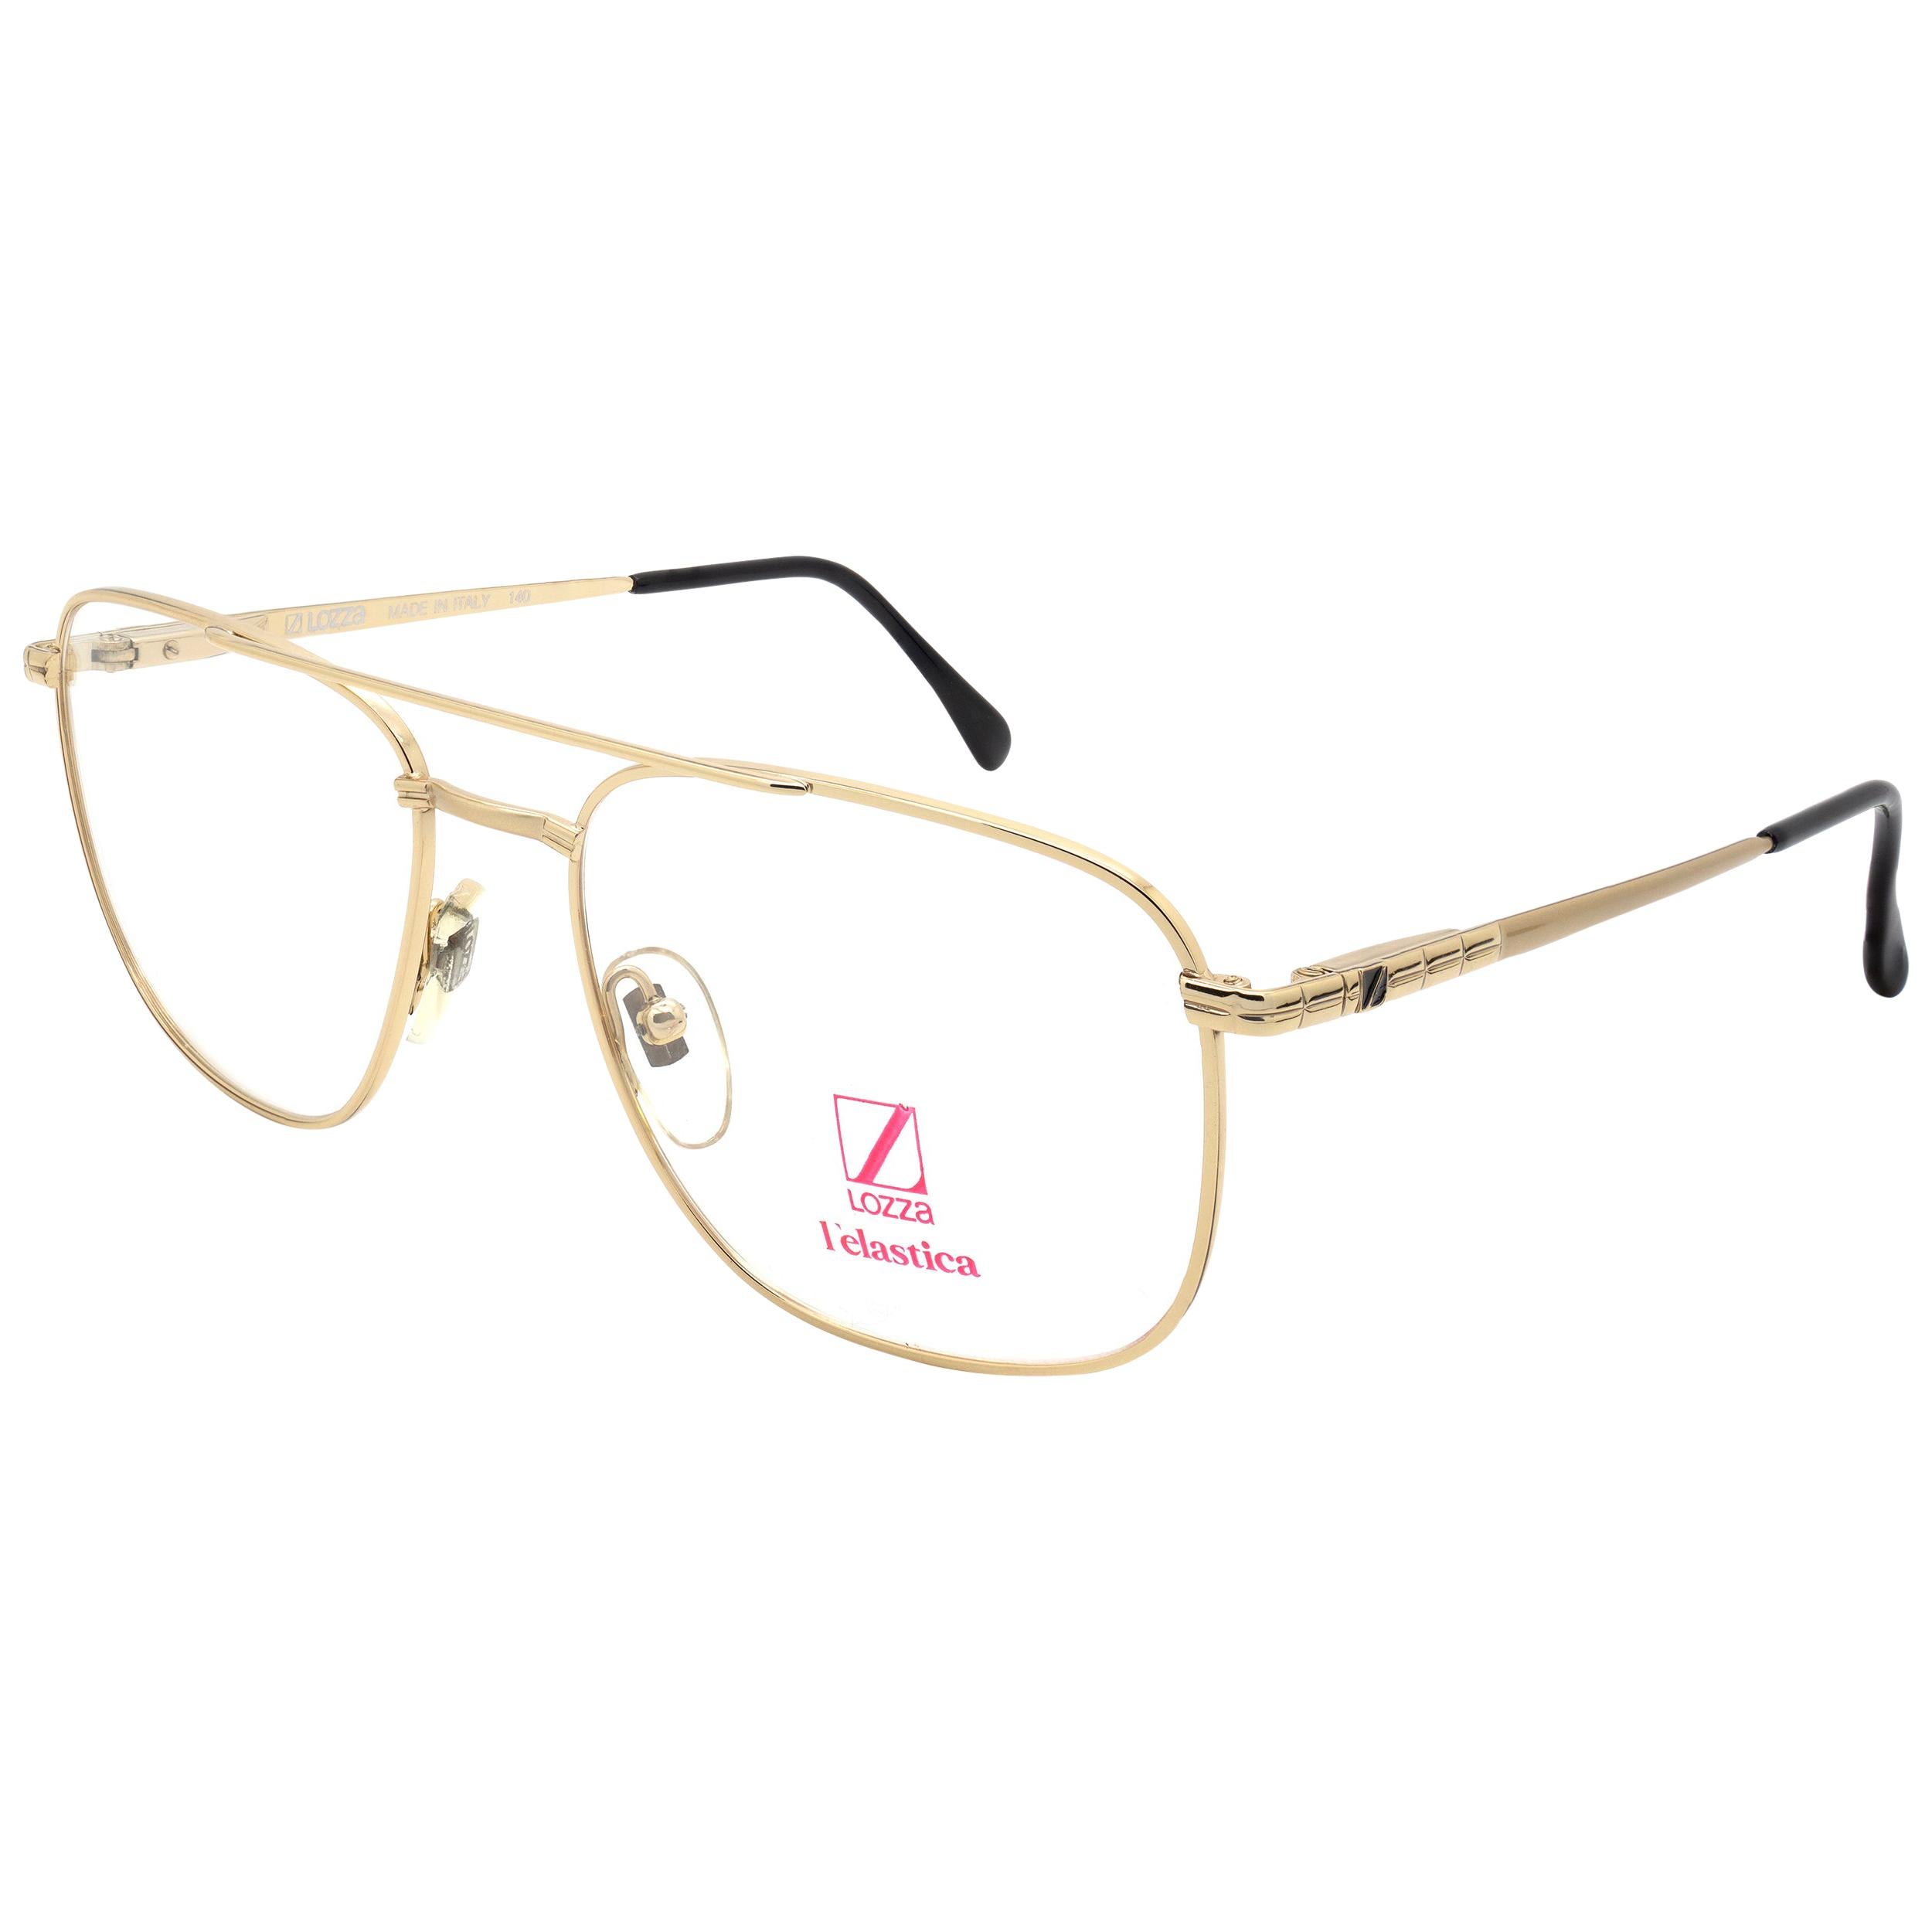 Lozza aviator vintage glasses frame